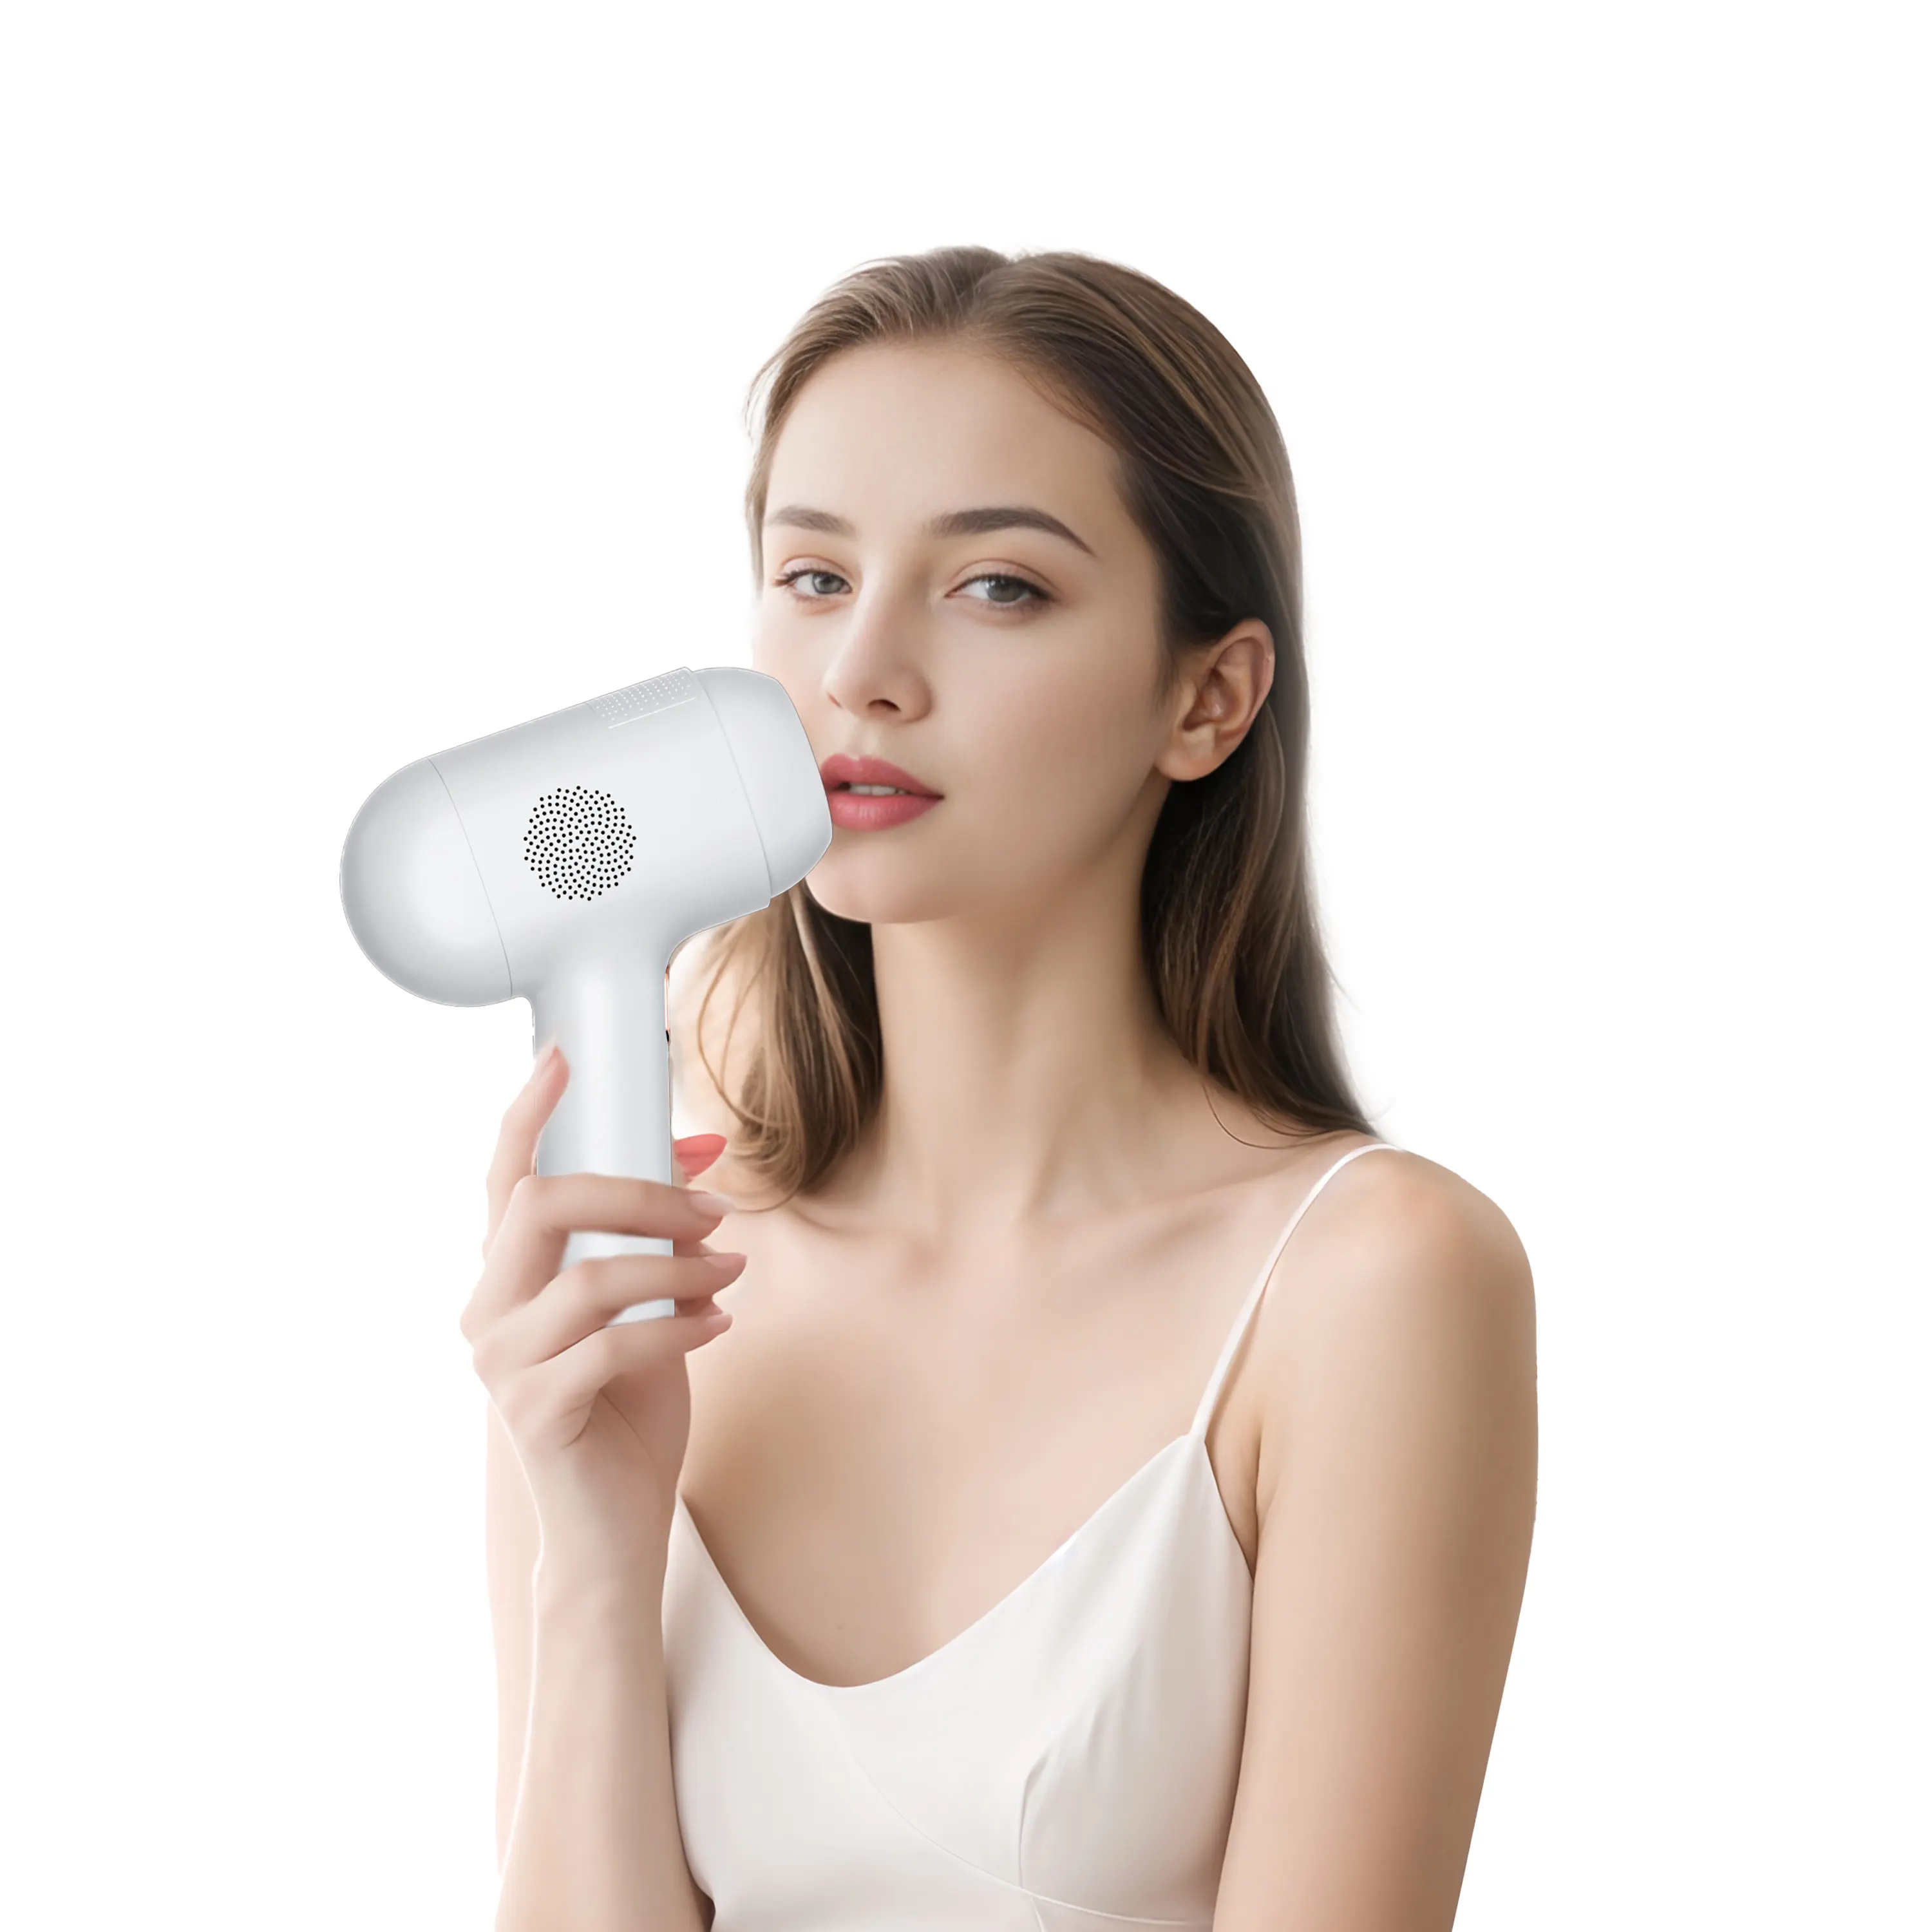 Neue verbesserte Epilierer Haaren tfernung Haut Gesicht Global Ipl Woman Shaver Laser für die Enthaarung Ipl Haaren tfernungs gerät zu Hause